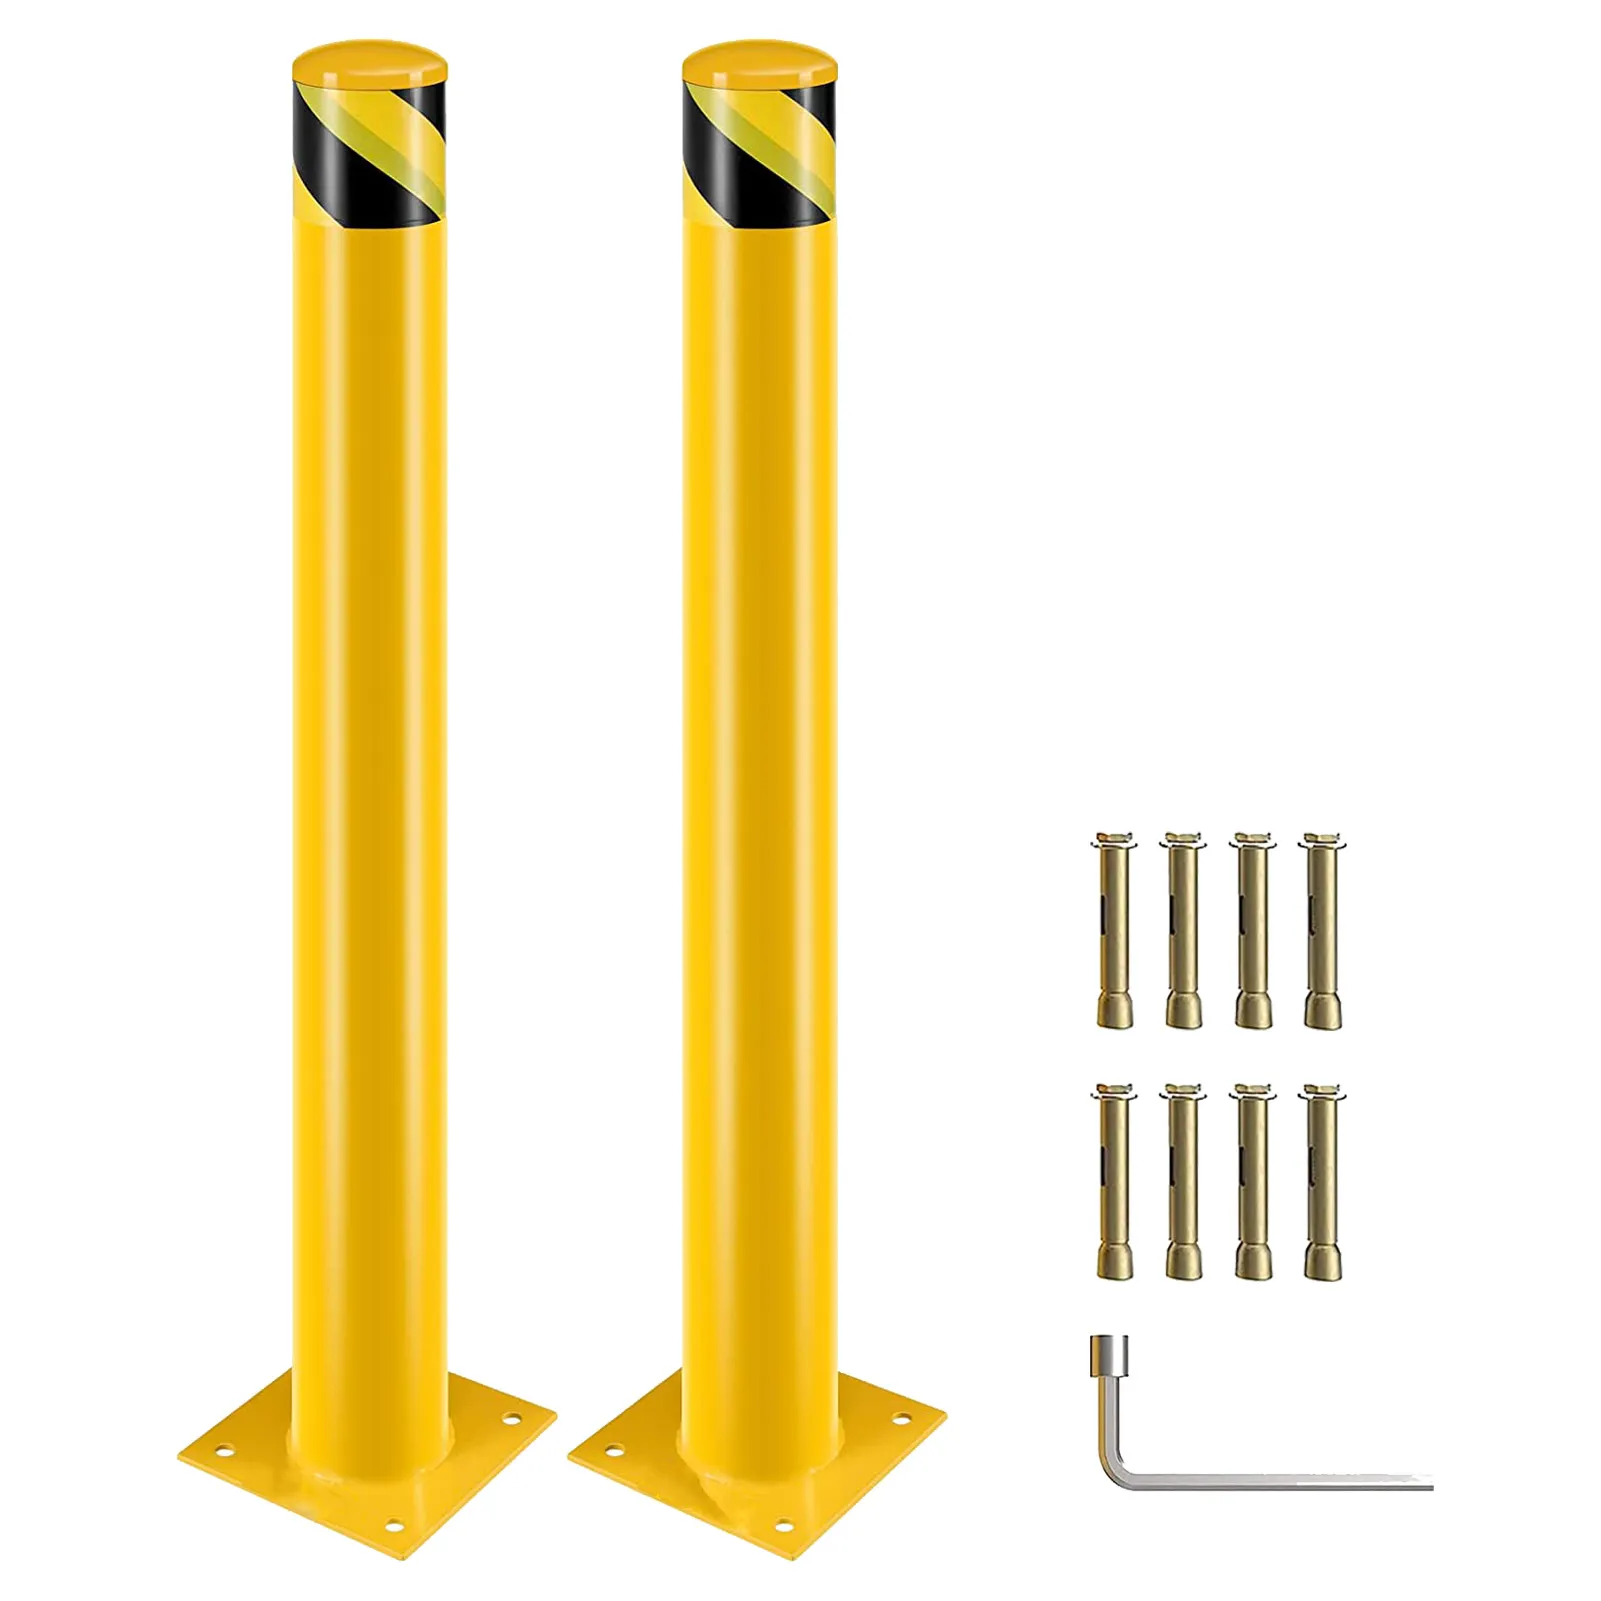 48 -дюймовая высота пост Болларда, Газовая парковка с желтой порошковой дорожкой с 4 якорными болтами, стальные трубные трубы для высоких зон движения